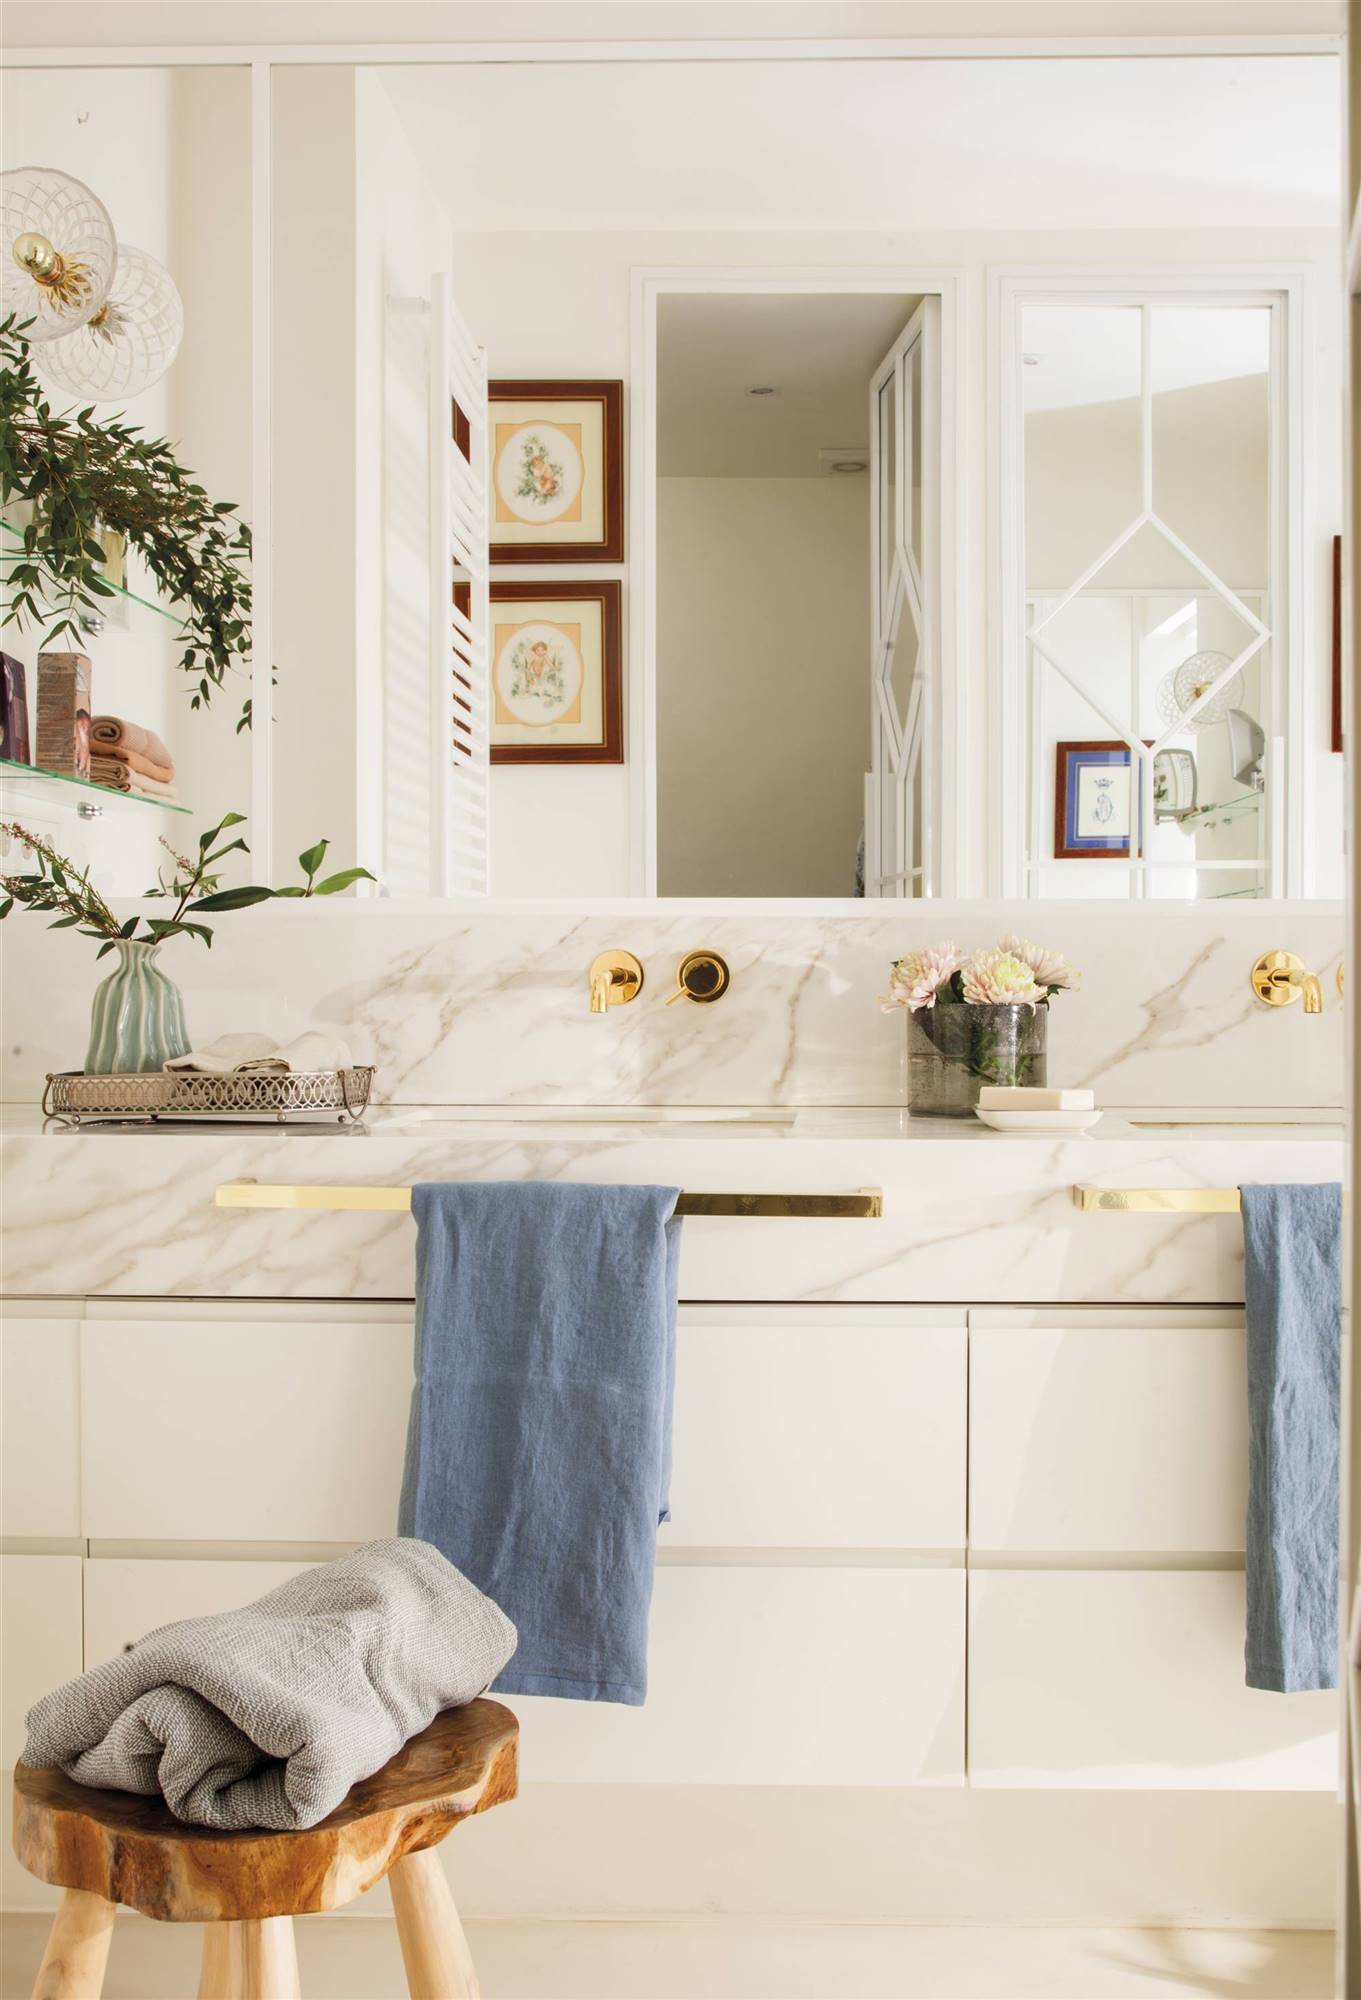 Baño blanco con revestimiento en mármol y detalles dorados.